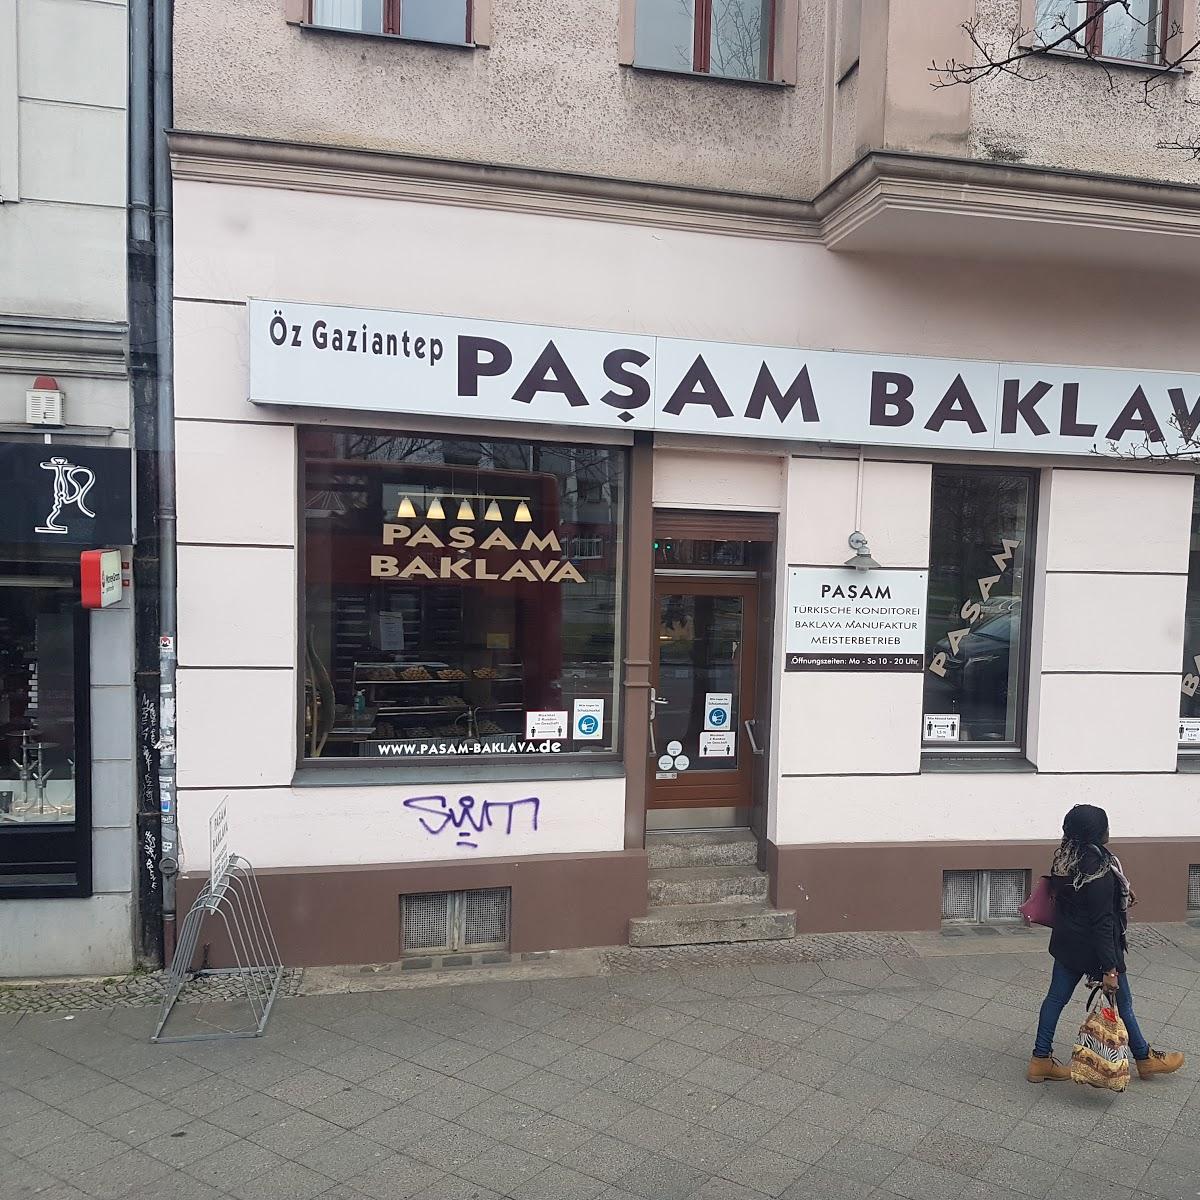 Restaurant "Pasam Baklava" in Berlin